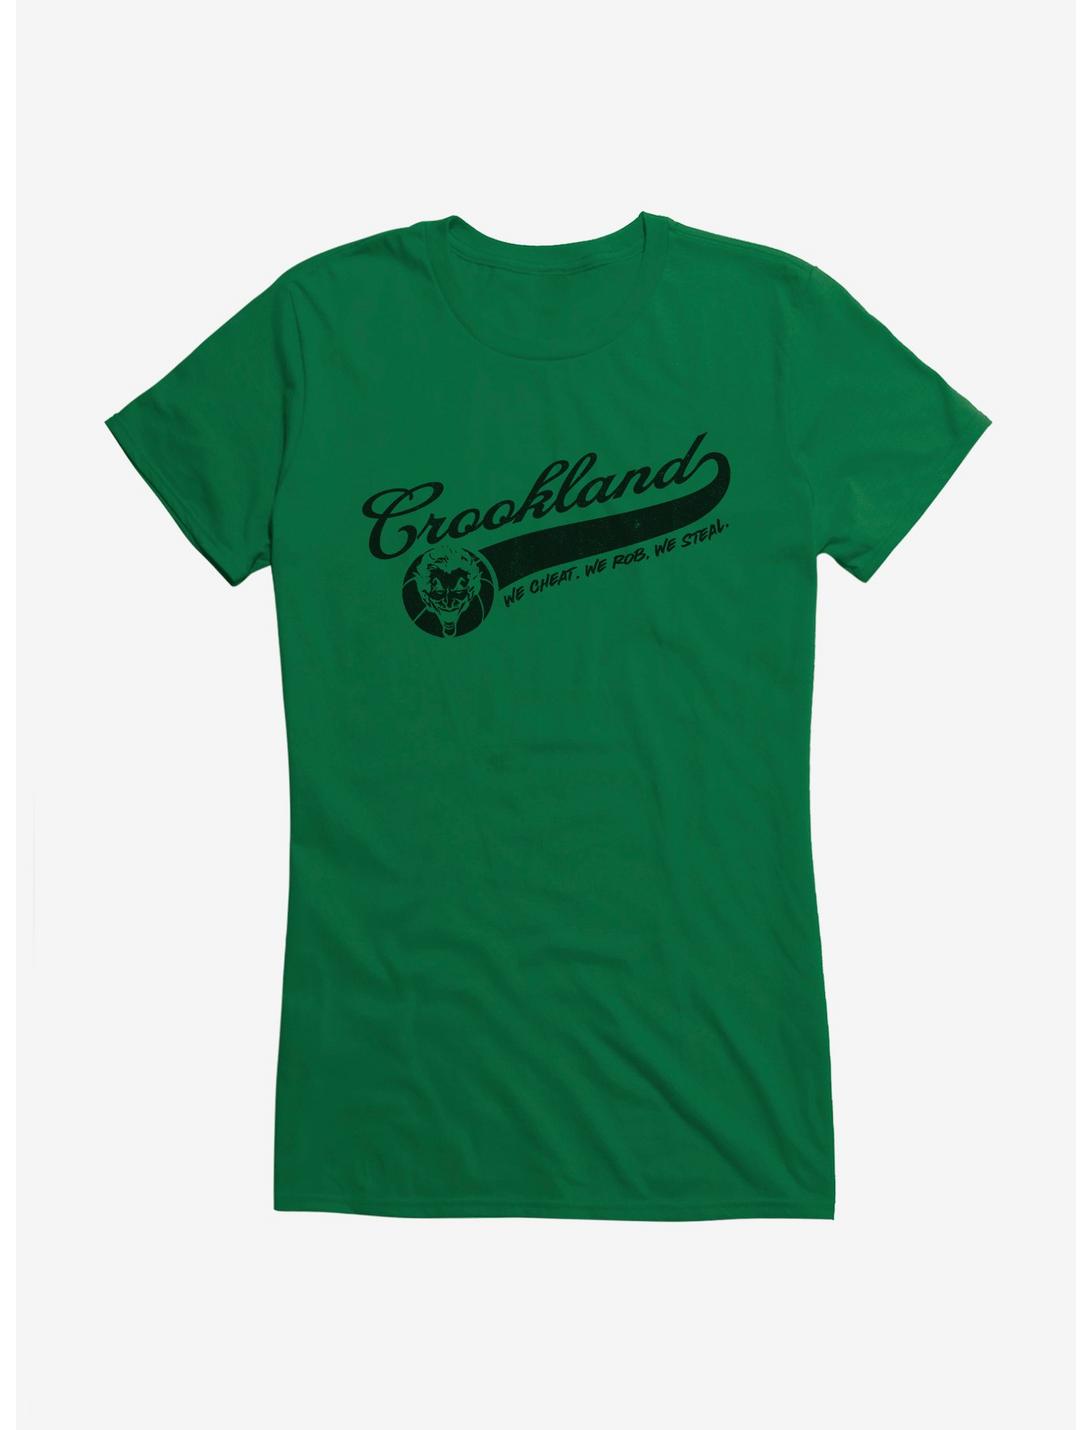 DC Comics Batman Crookland Girls T-Shirt, , hi-res